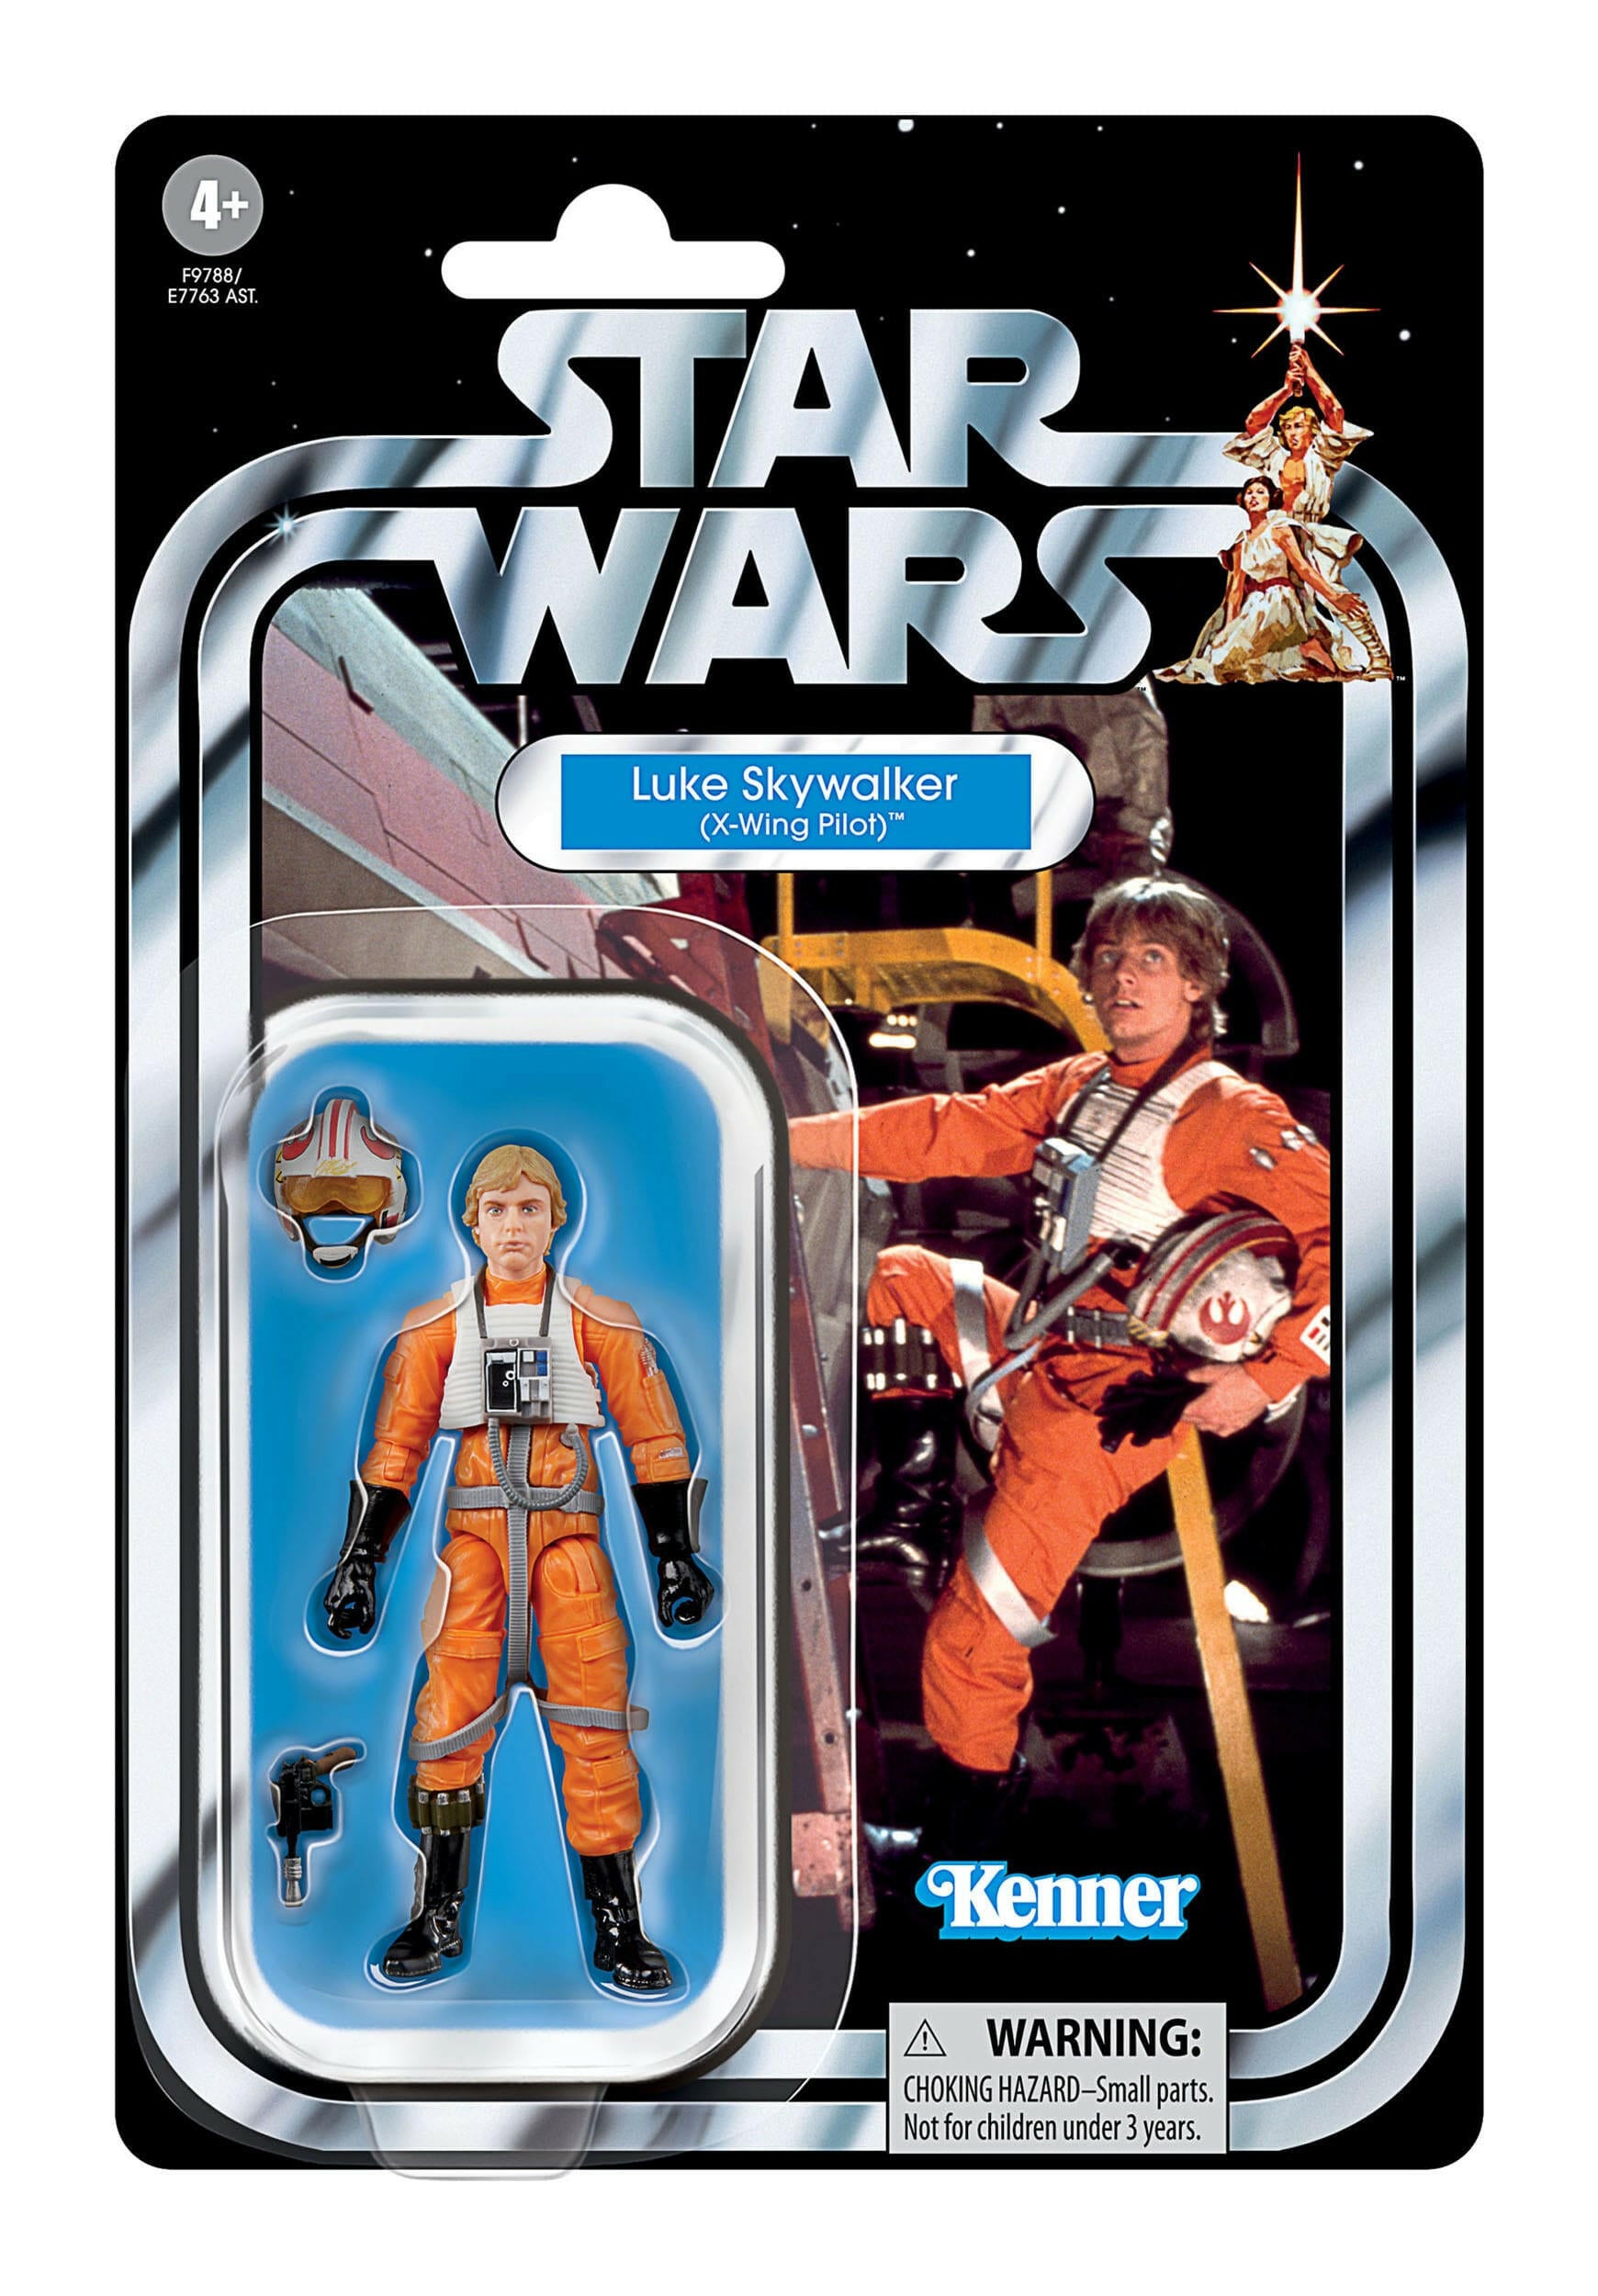 Pre-Order! Star Wars Vintage Collection Episode IV Actionfigur Luke Skywalker (X-Wing Pilot) 10cm Hasbro